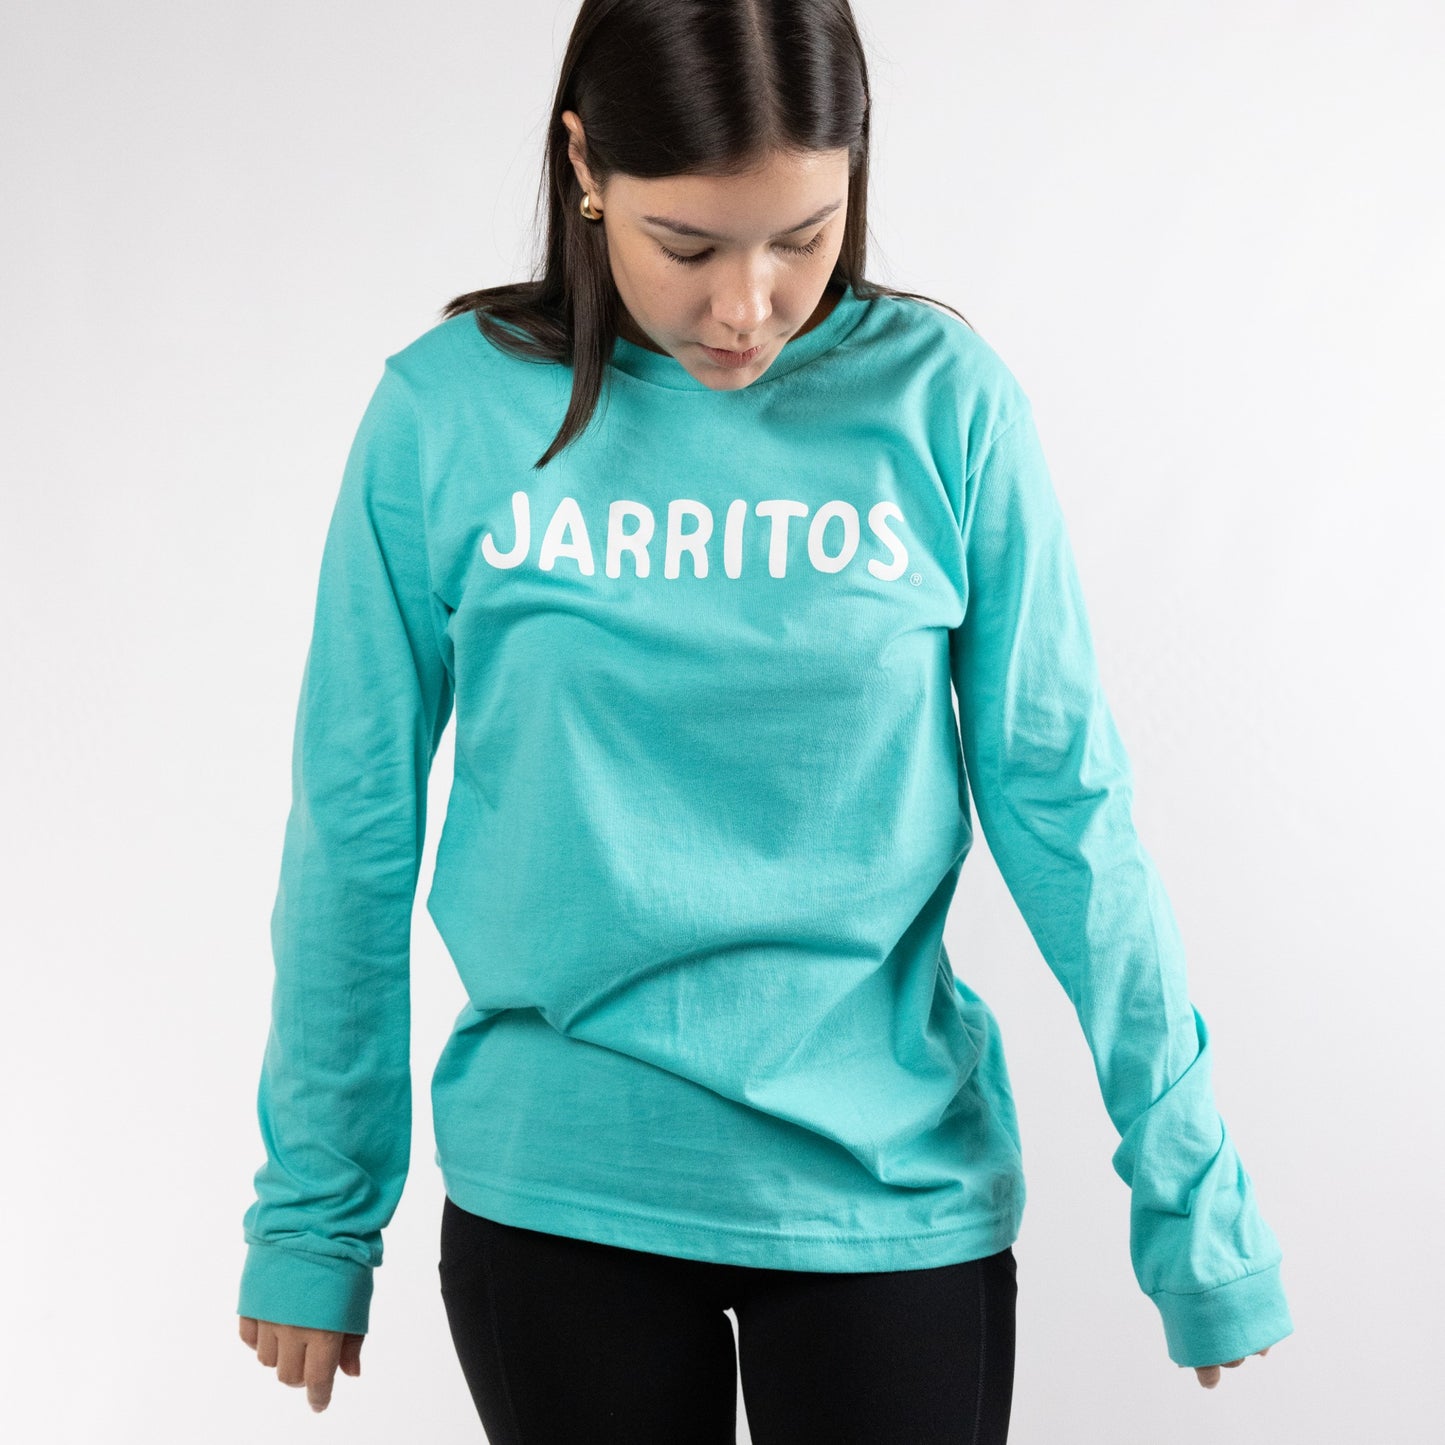 Jarritos - Super Good Ice Blue